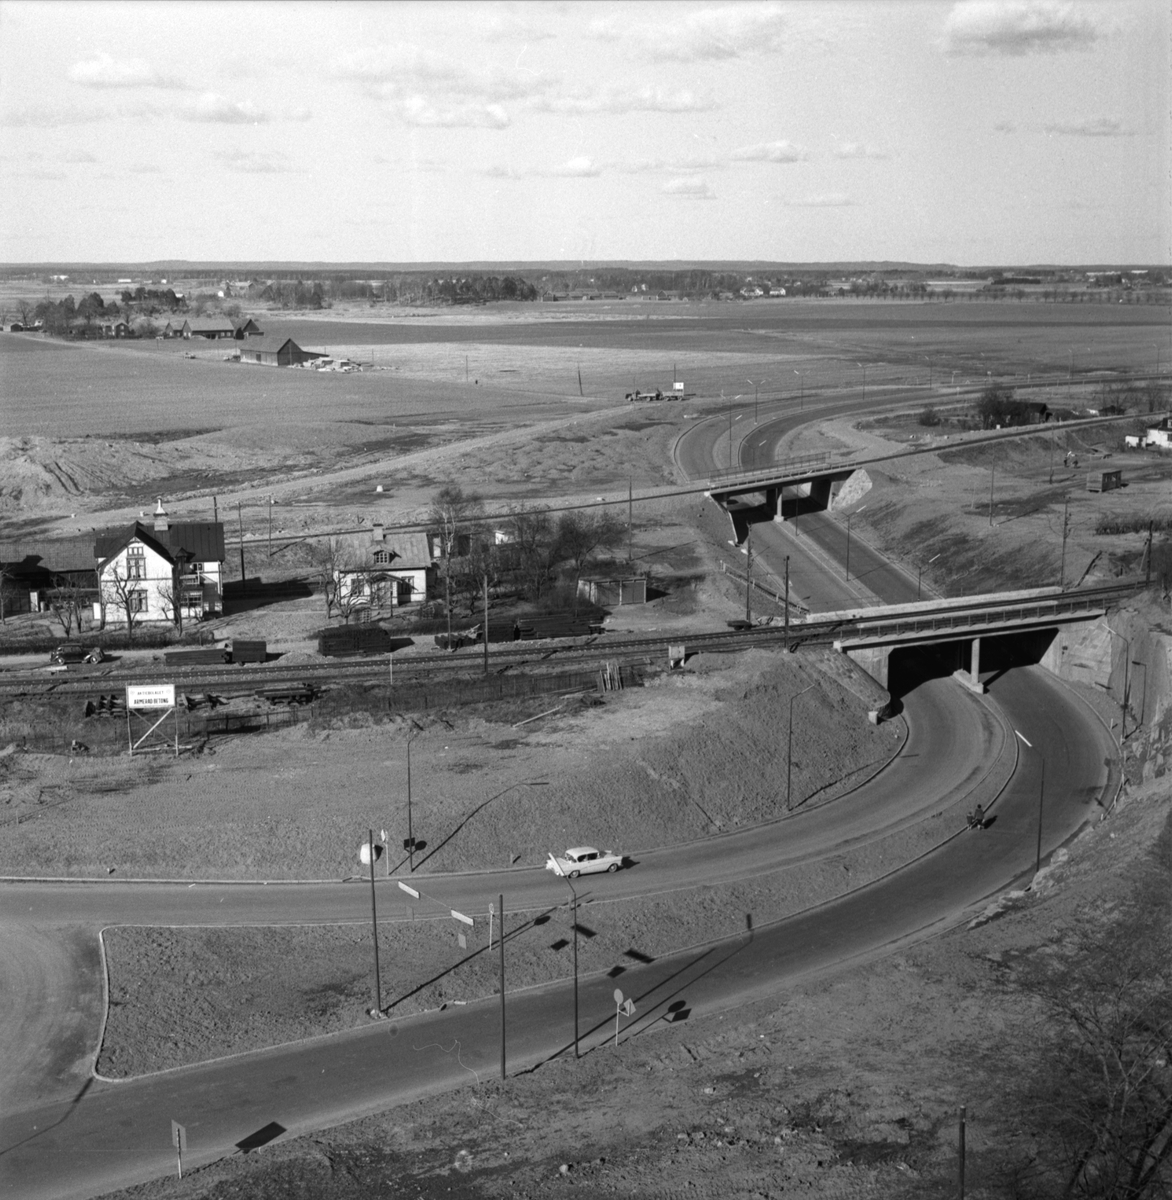 Hösten 1959 stod den nya infarten från norr klar i Linköping. Vägpartiet under de bägge järnvägsspåren i Kallerstad var endast en del av en större trafiksatsning att leda den allt intensivare fordonstrafiken norr om staden. Tullbrons tillkomst och Industrigatans breddning var andra delar som i sammanhanget realiserades. De bägge husen till vänster i bild, på den så kallade Landshövdingejorden, uppfördes upplysningsvis under det sena 1800-talet av den från Horn bördige snickaren Elof Andersson.